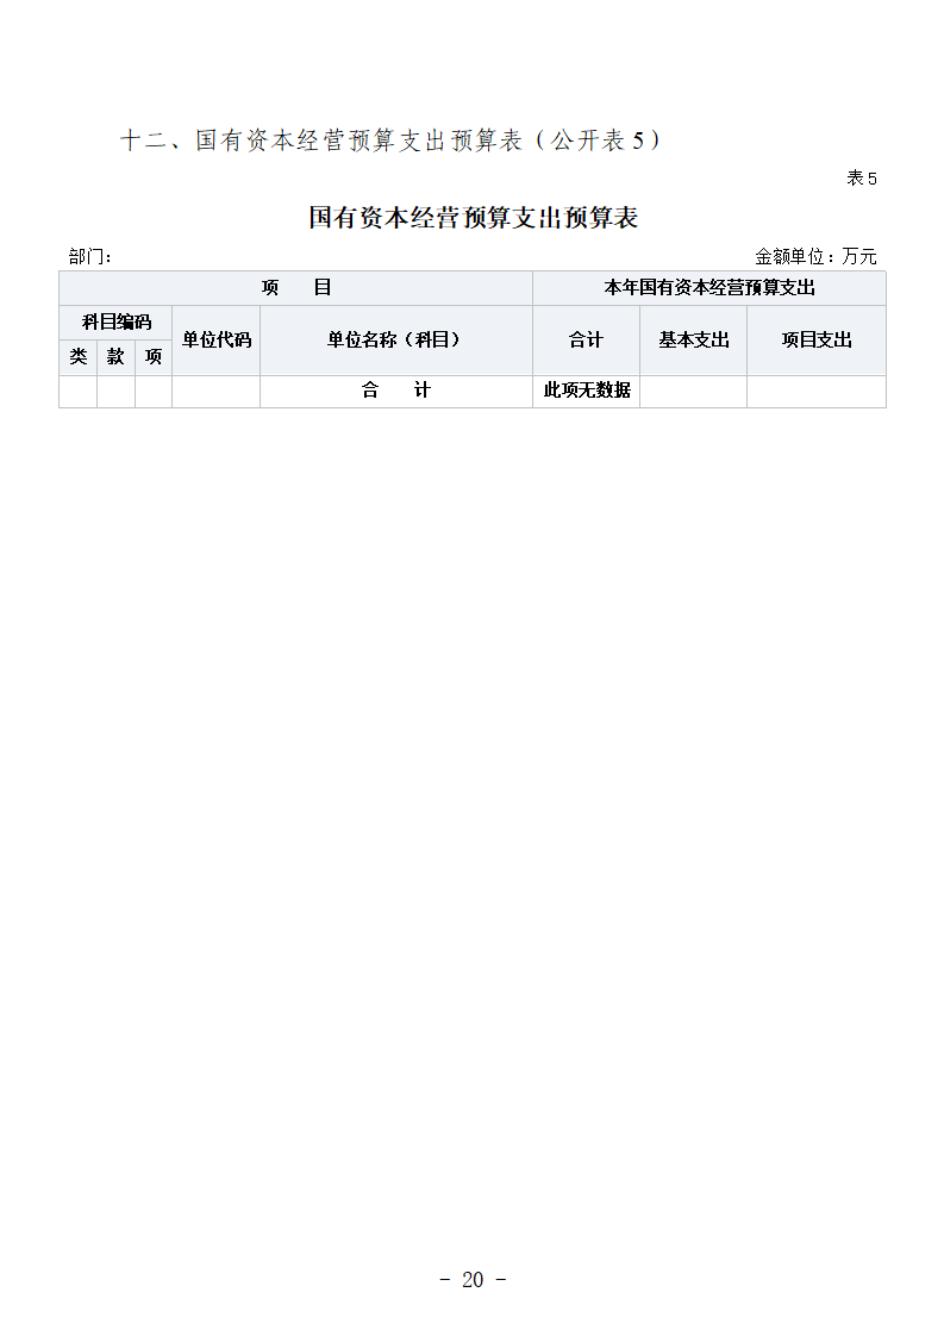 省考古院2024年四川省省级单位预算公开模板(3.14)_21.jpg